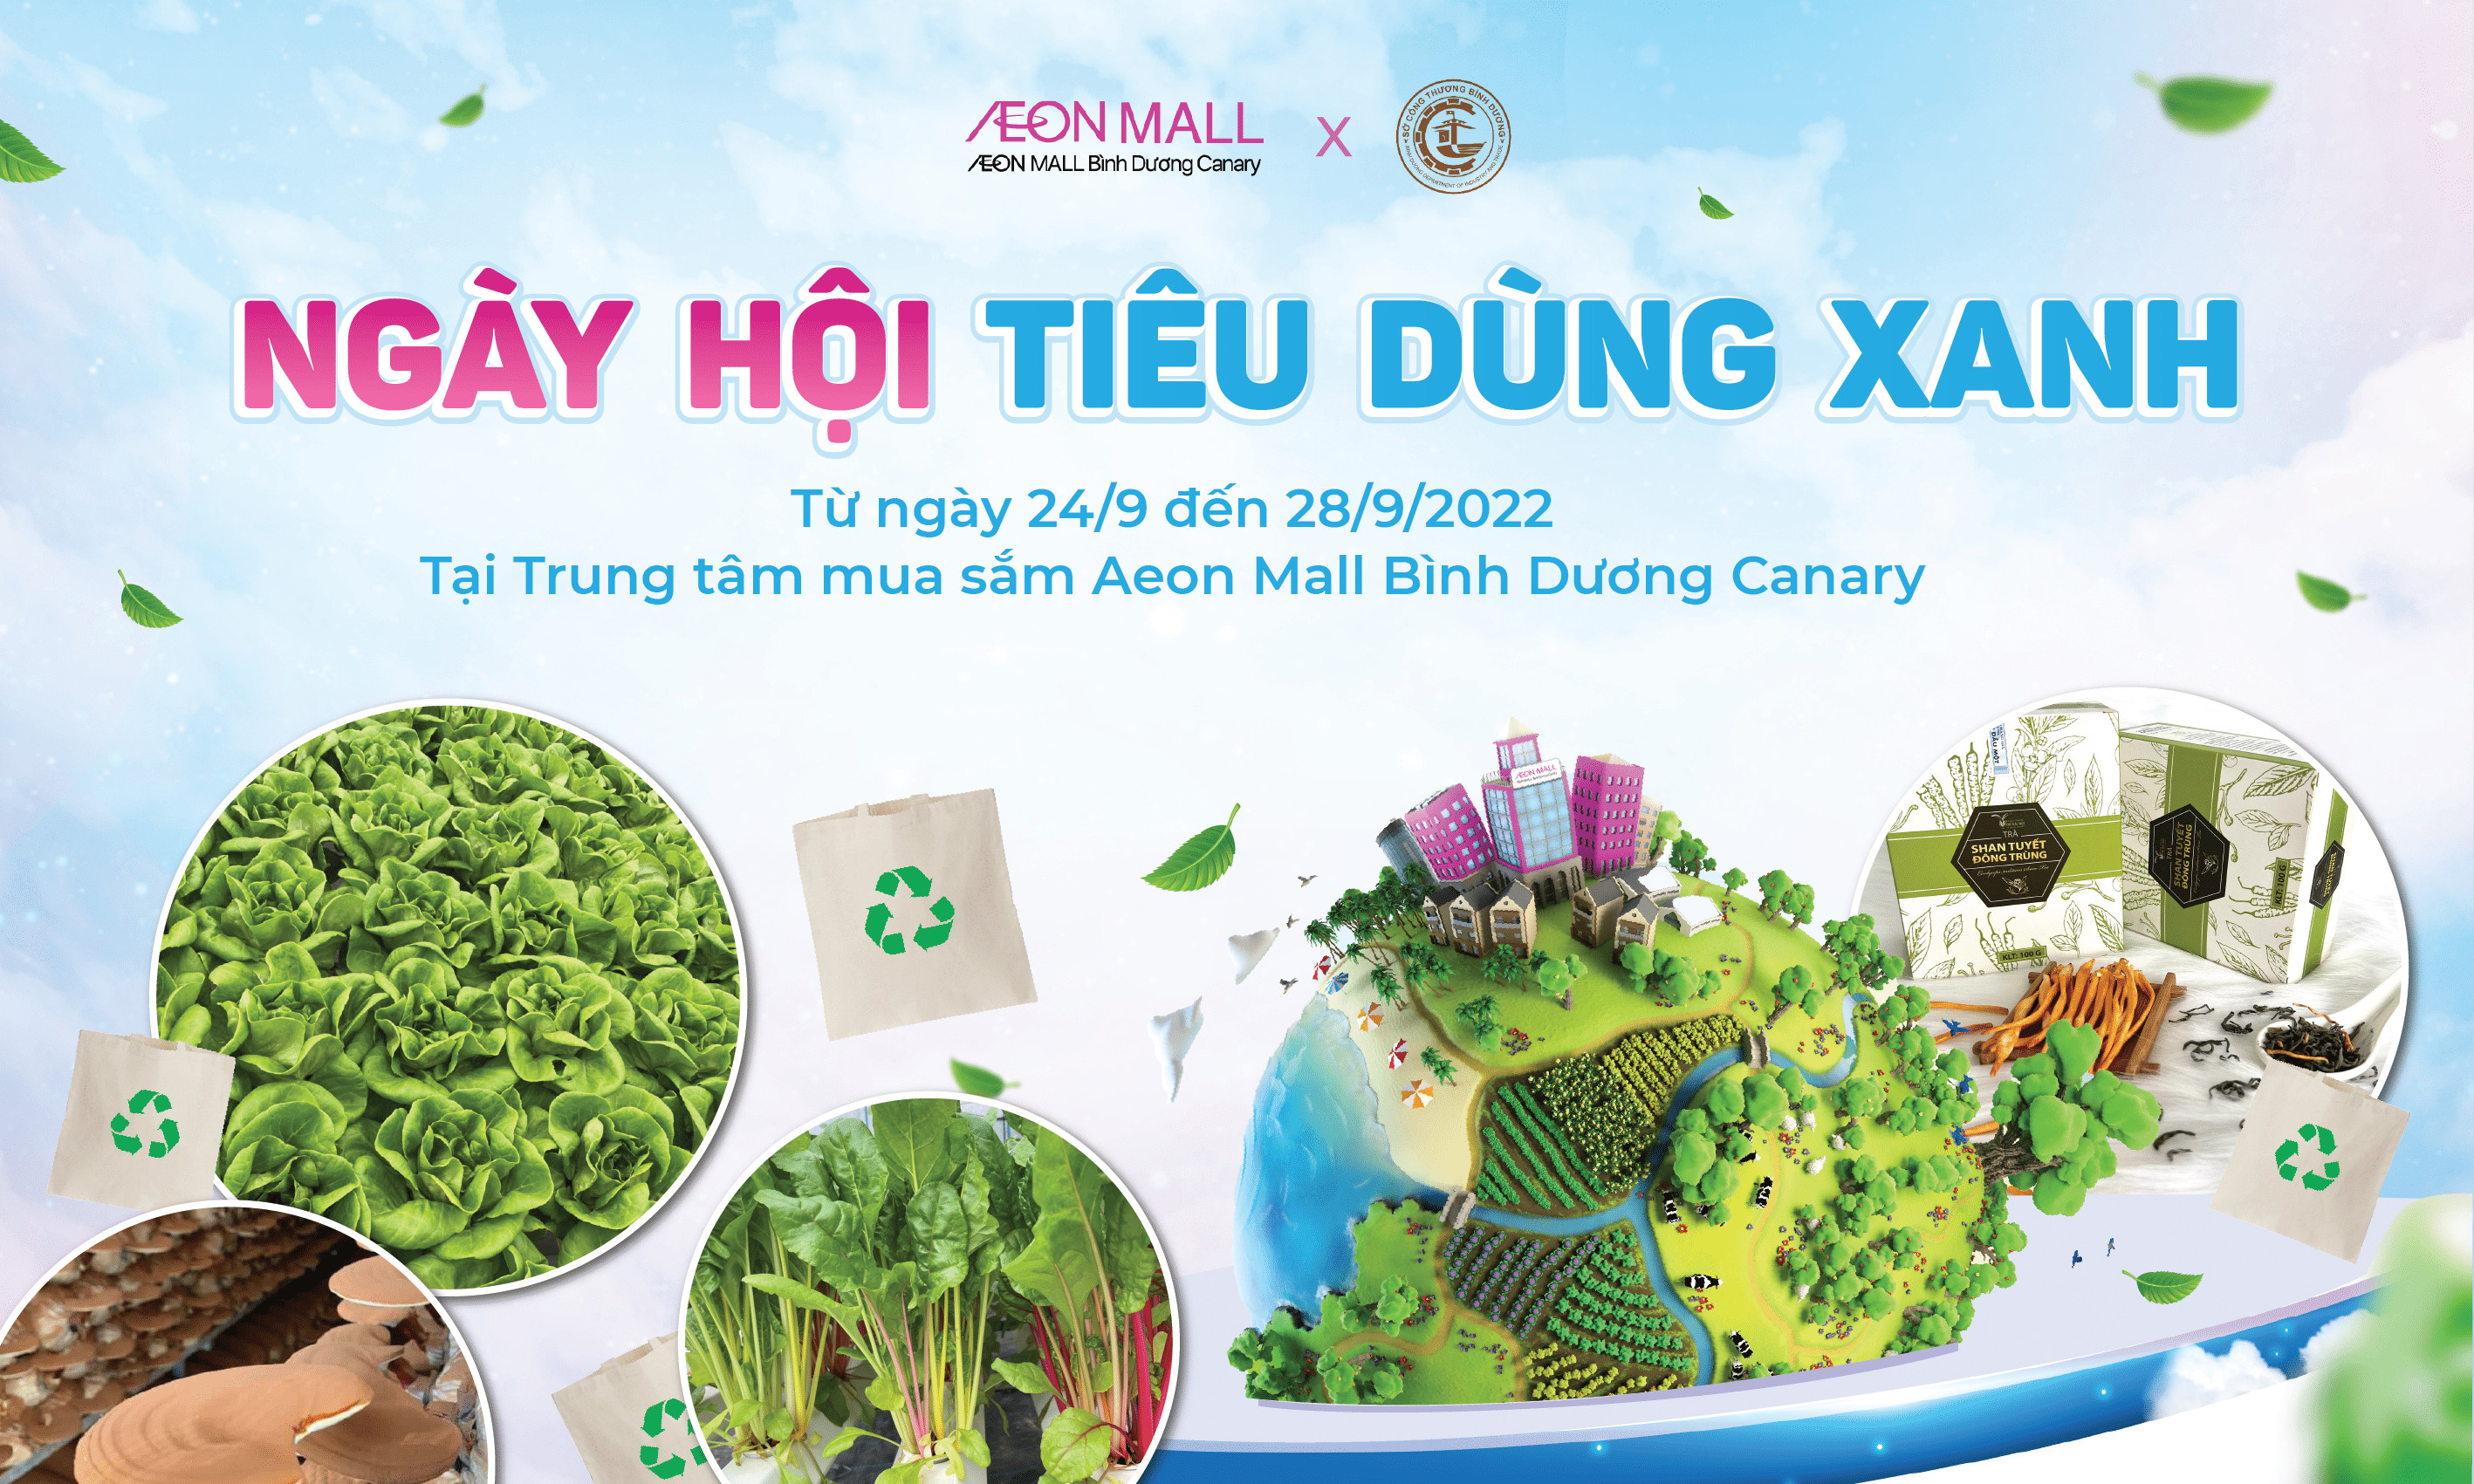 Tổ chức Phiên chợ giới thiệu sản phẩm Việt và điểm du lịch Bình Dương tại Trung tâm mua sắm Aeon Mall Bình Dương Canary năm 2022